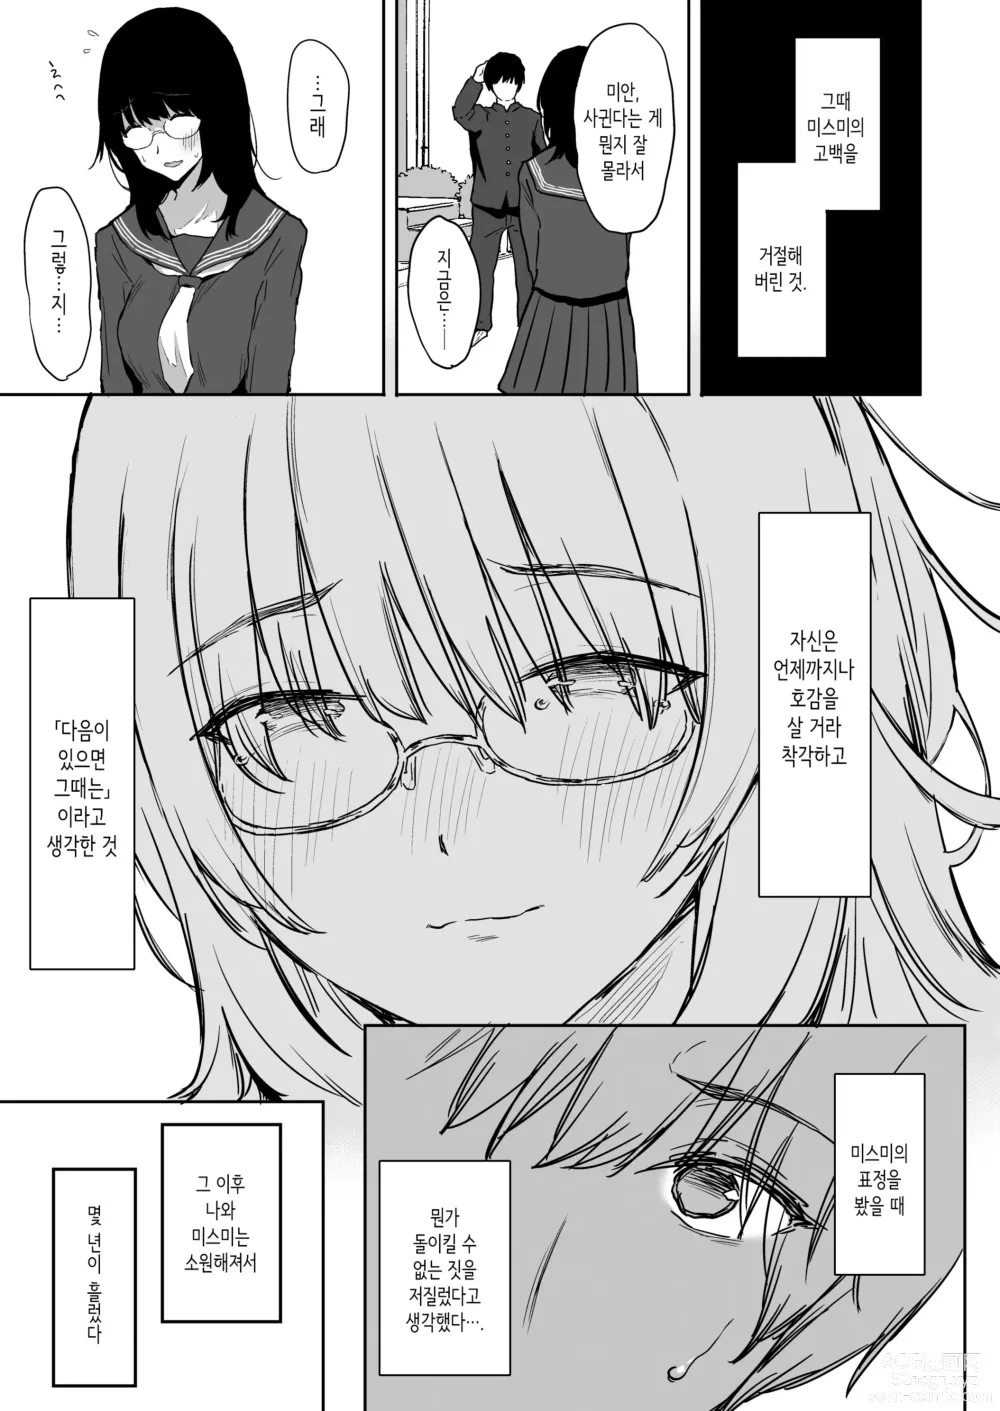 Page 9 of doujinshi 나, 아직 좋아해.